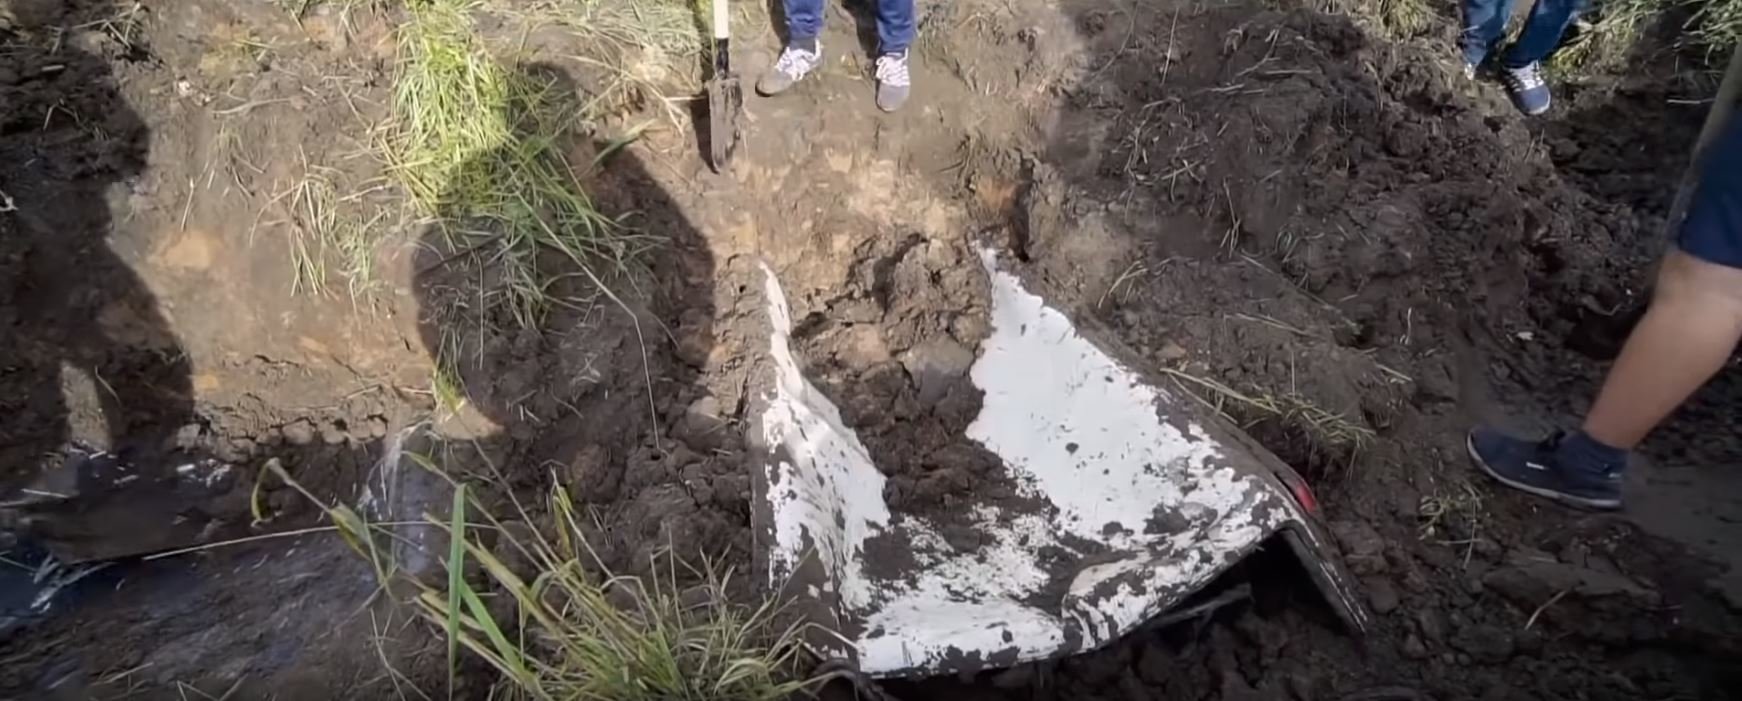 Ruští YouTubeři před rokem zakopali trojici aut, teď je vykopali a pokusí se je oživit